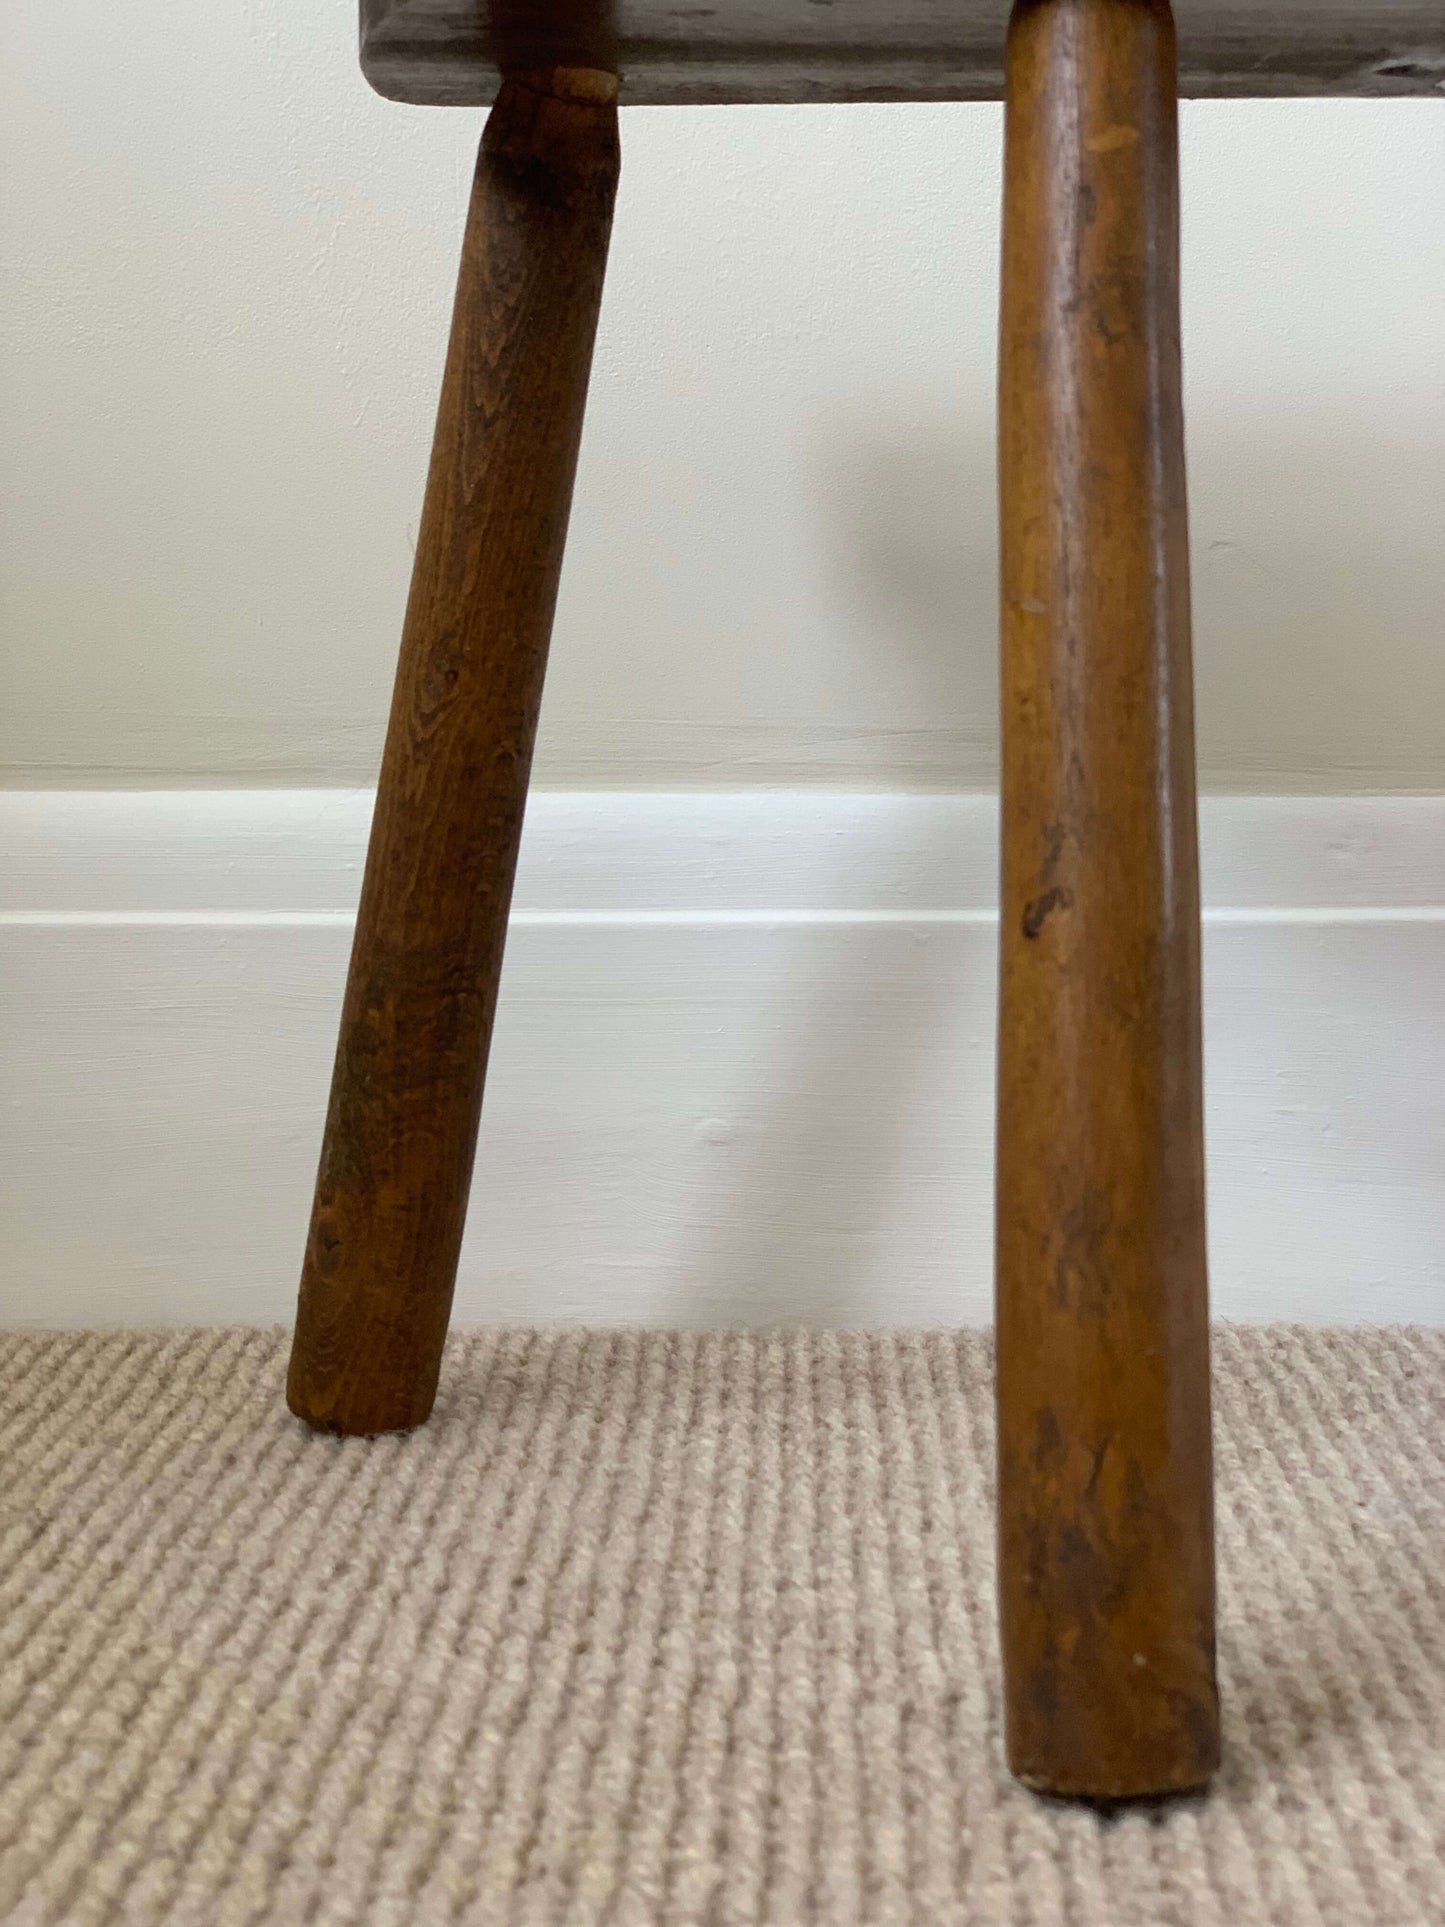 Vintage demilune stool on tripod legs